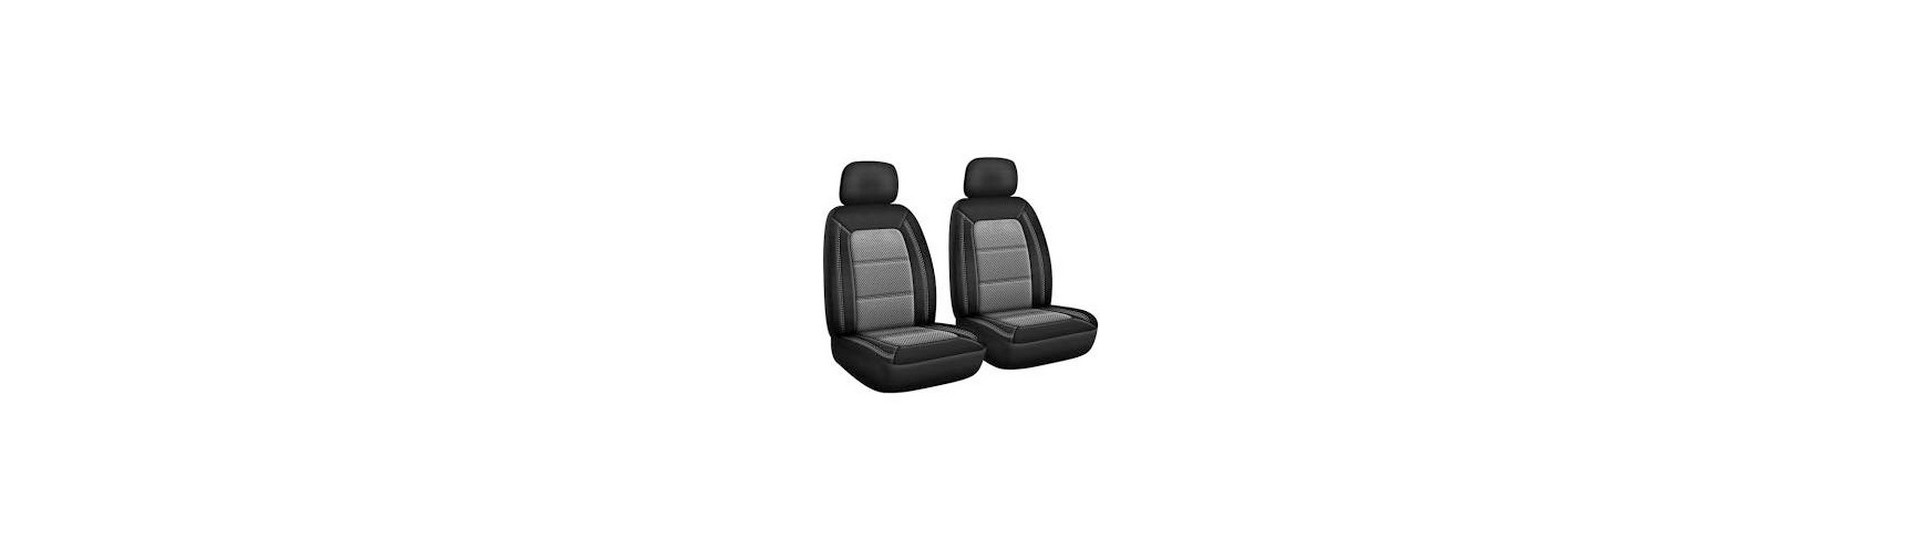 Housses de protection, sièges, poids lourds, x250 - Proxitech